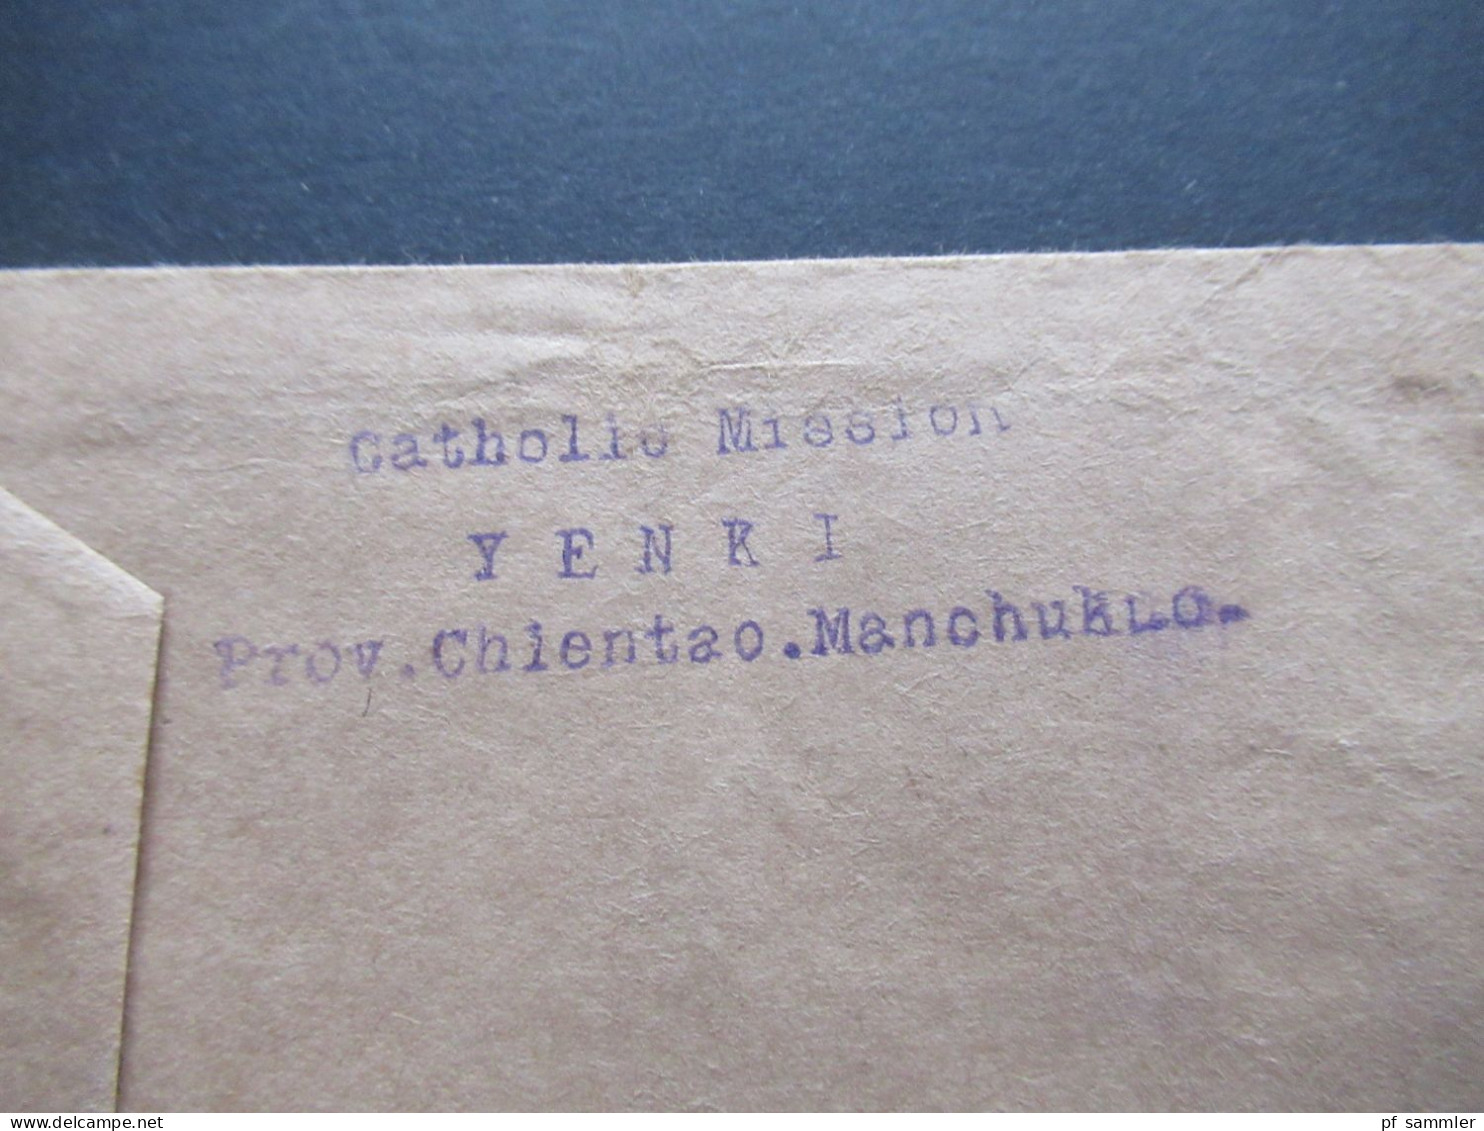 Asien China Mandschurei um 1930 Yenki Catholic Mission  Prov. Chientao Manchuria Via Sibiria in die CSR gesendet